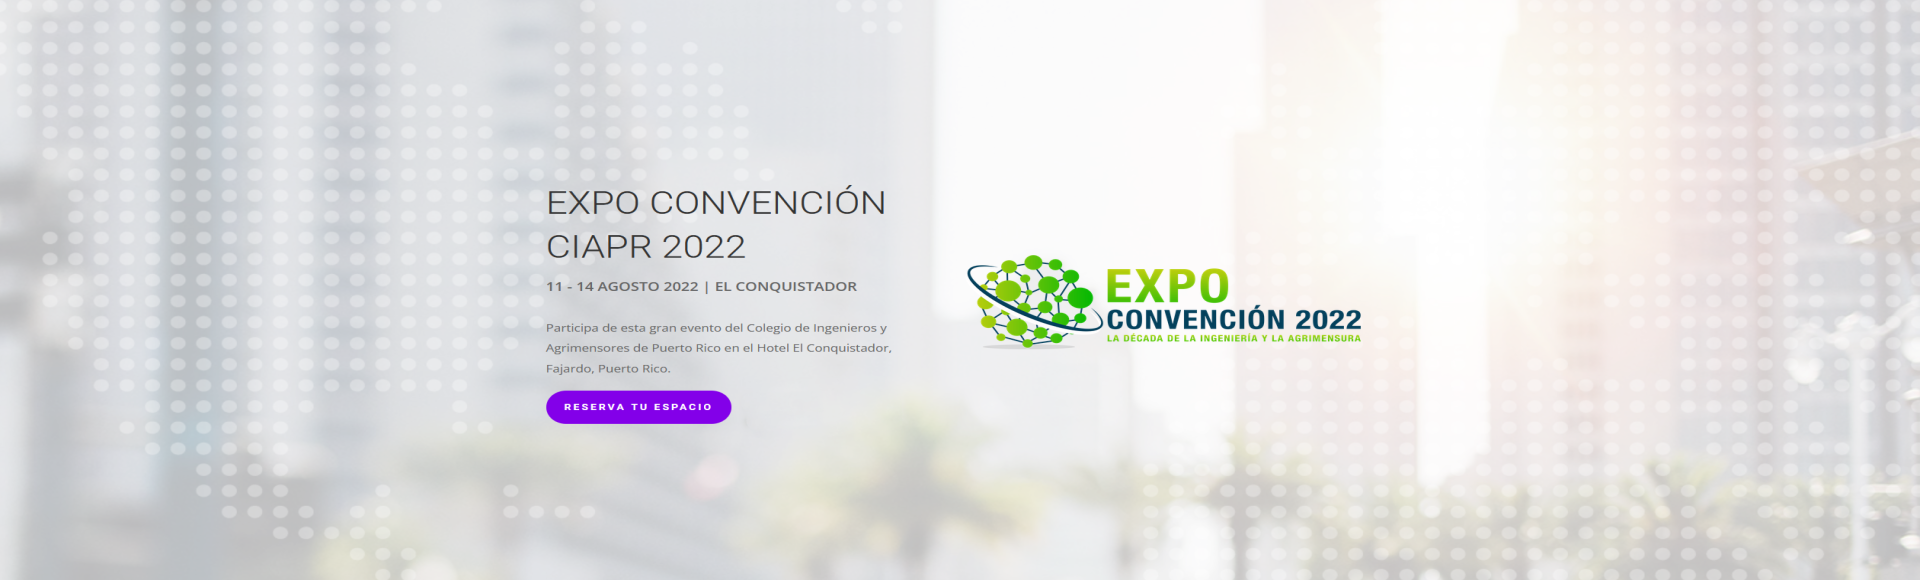 Expo Convención 2022